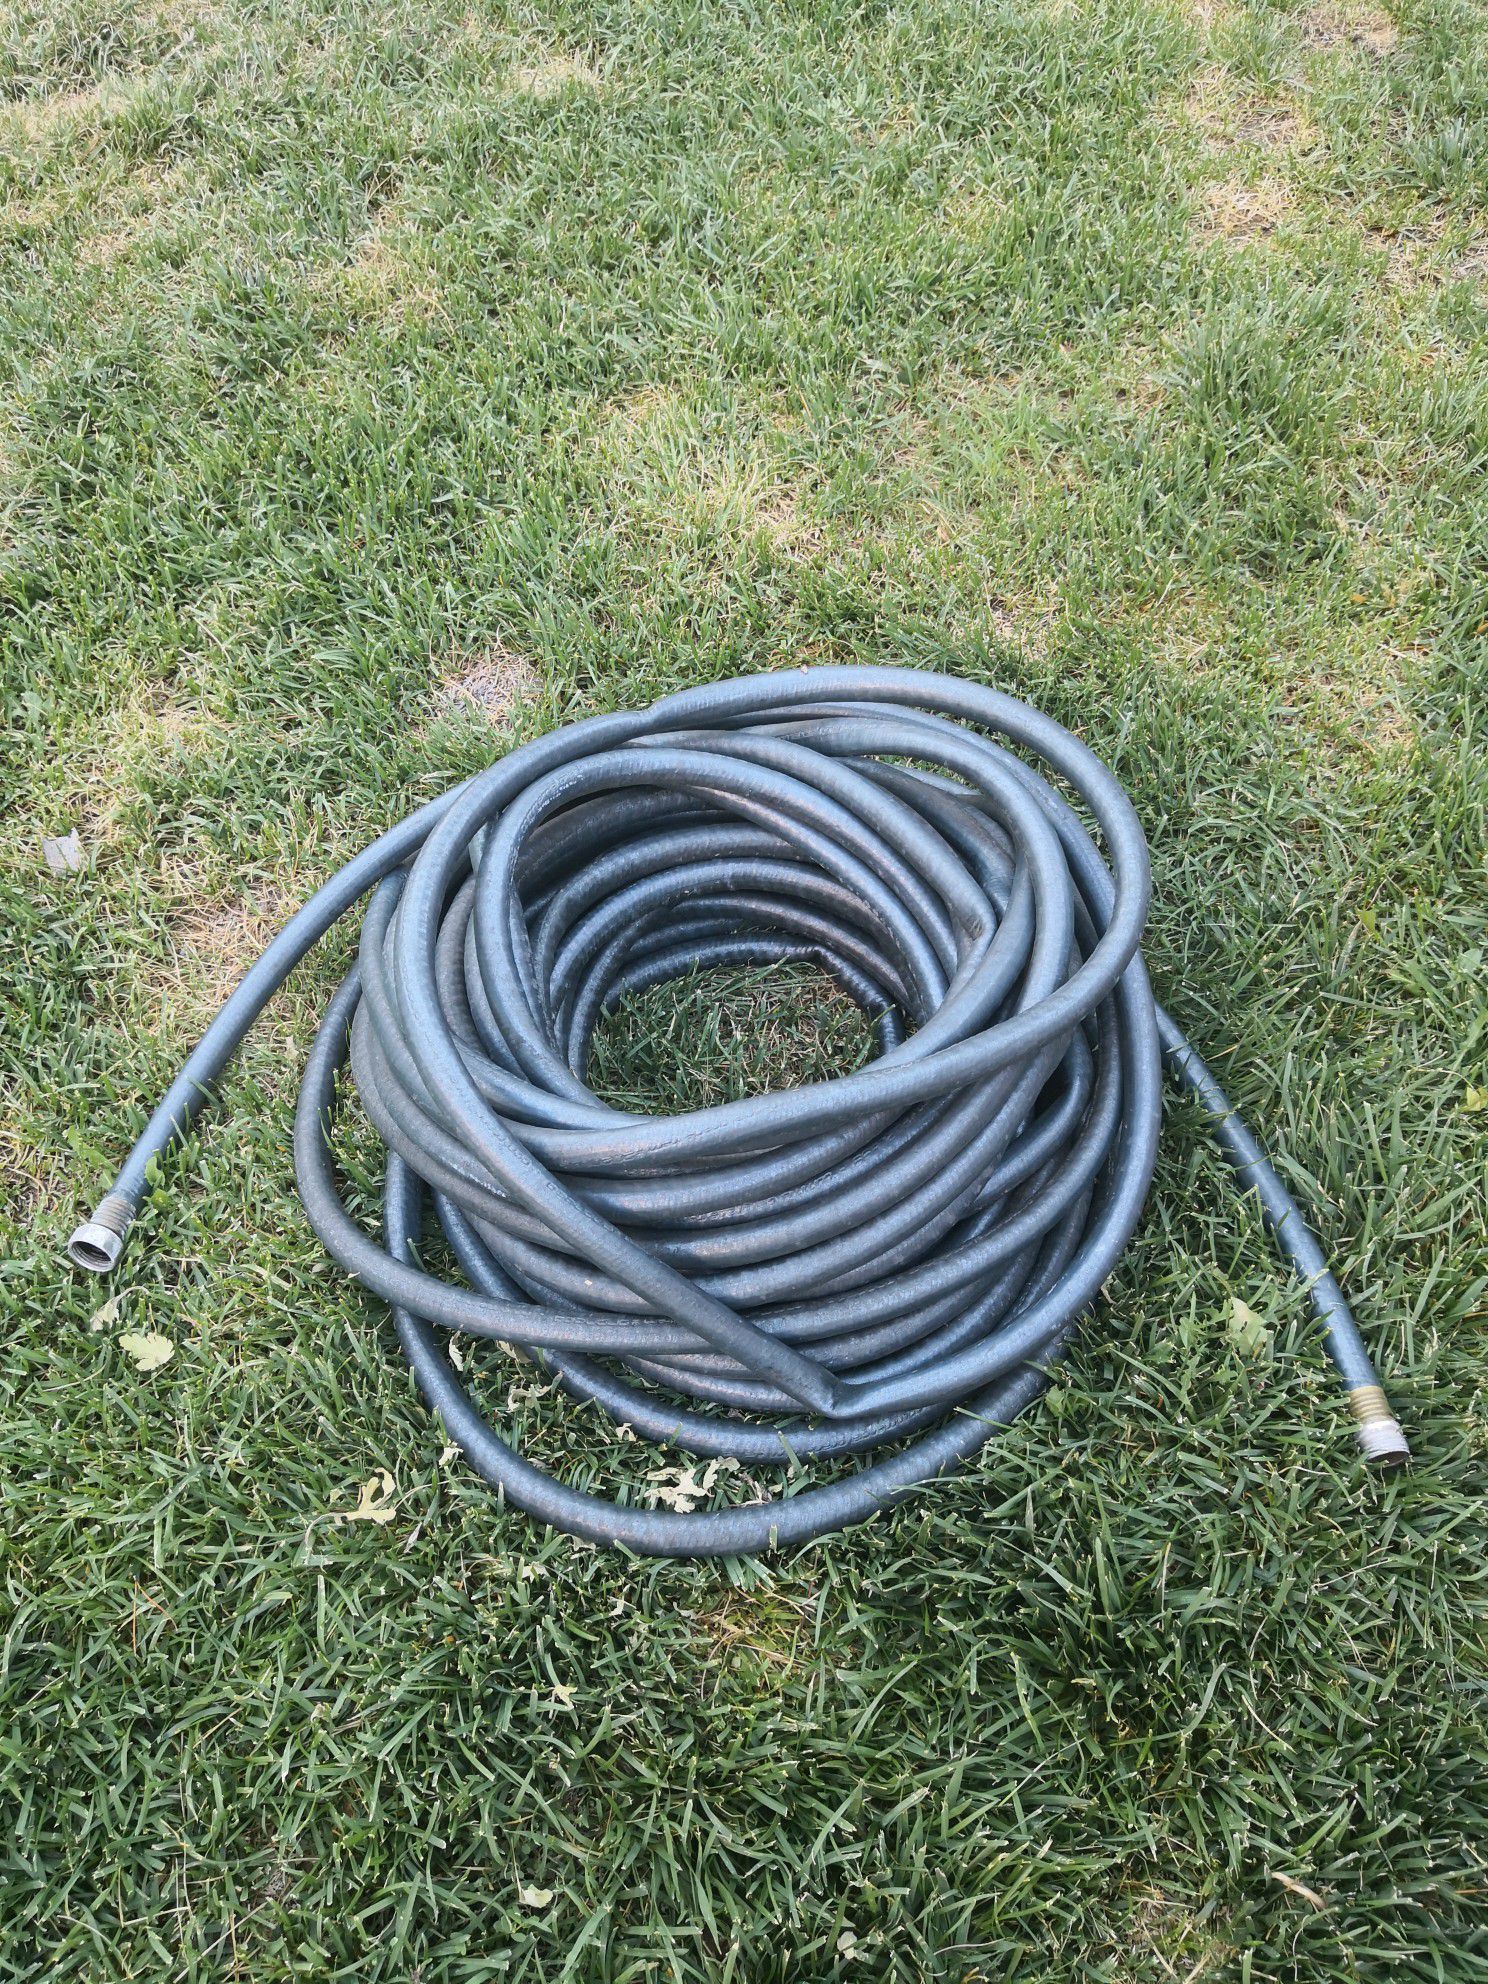 Heavy duty garden hose